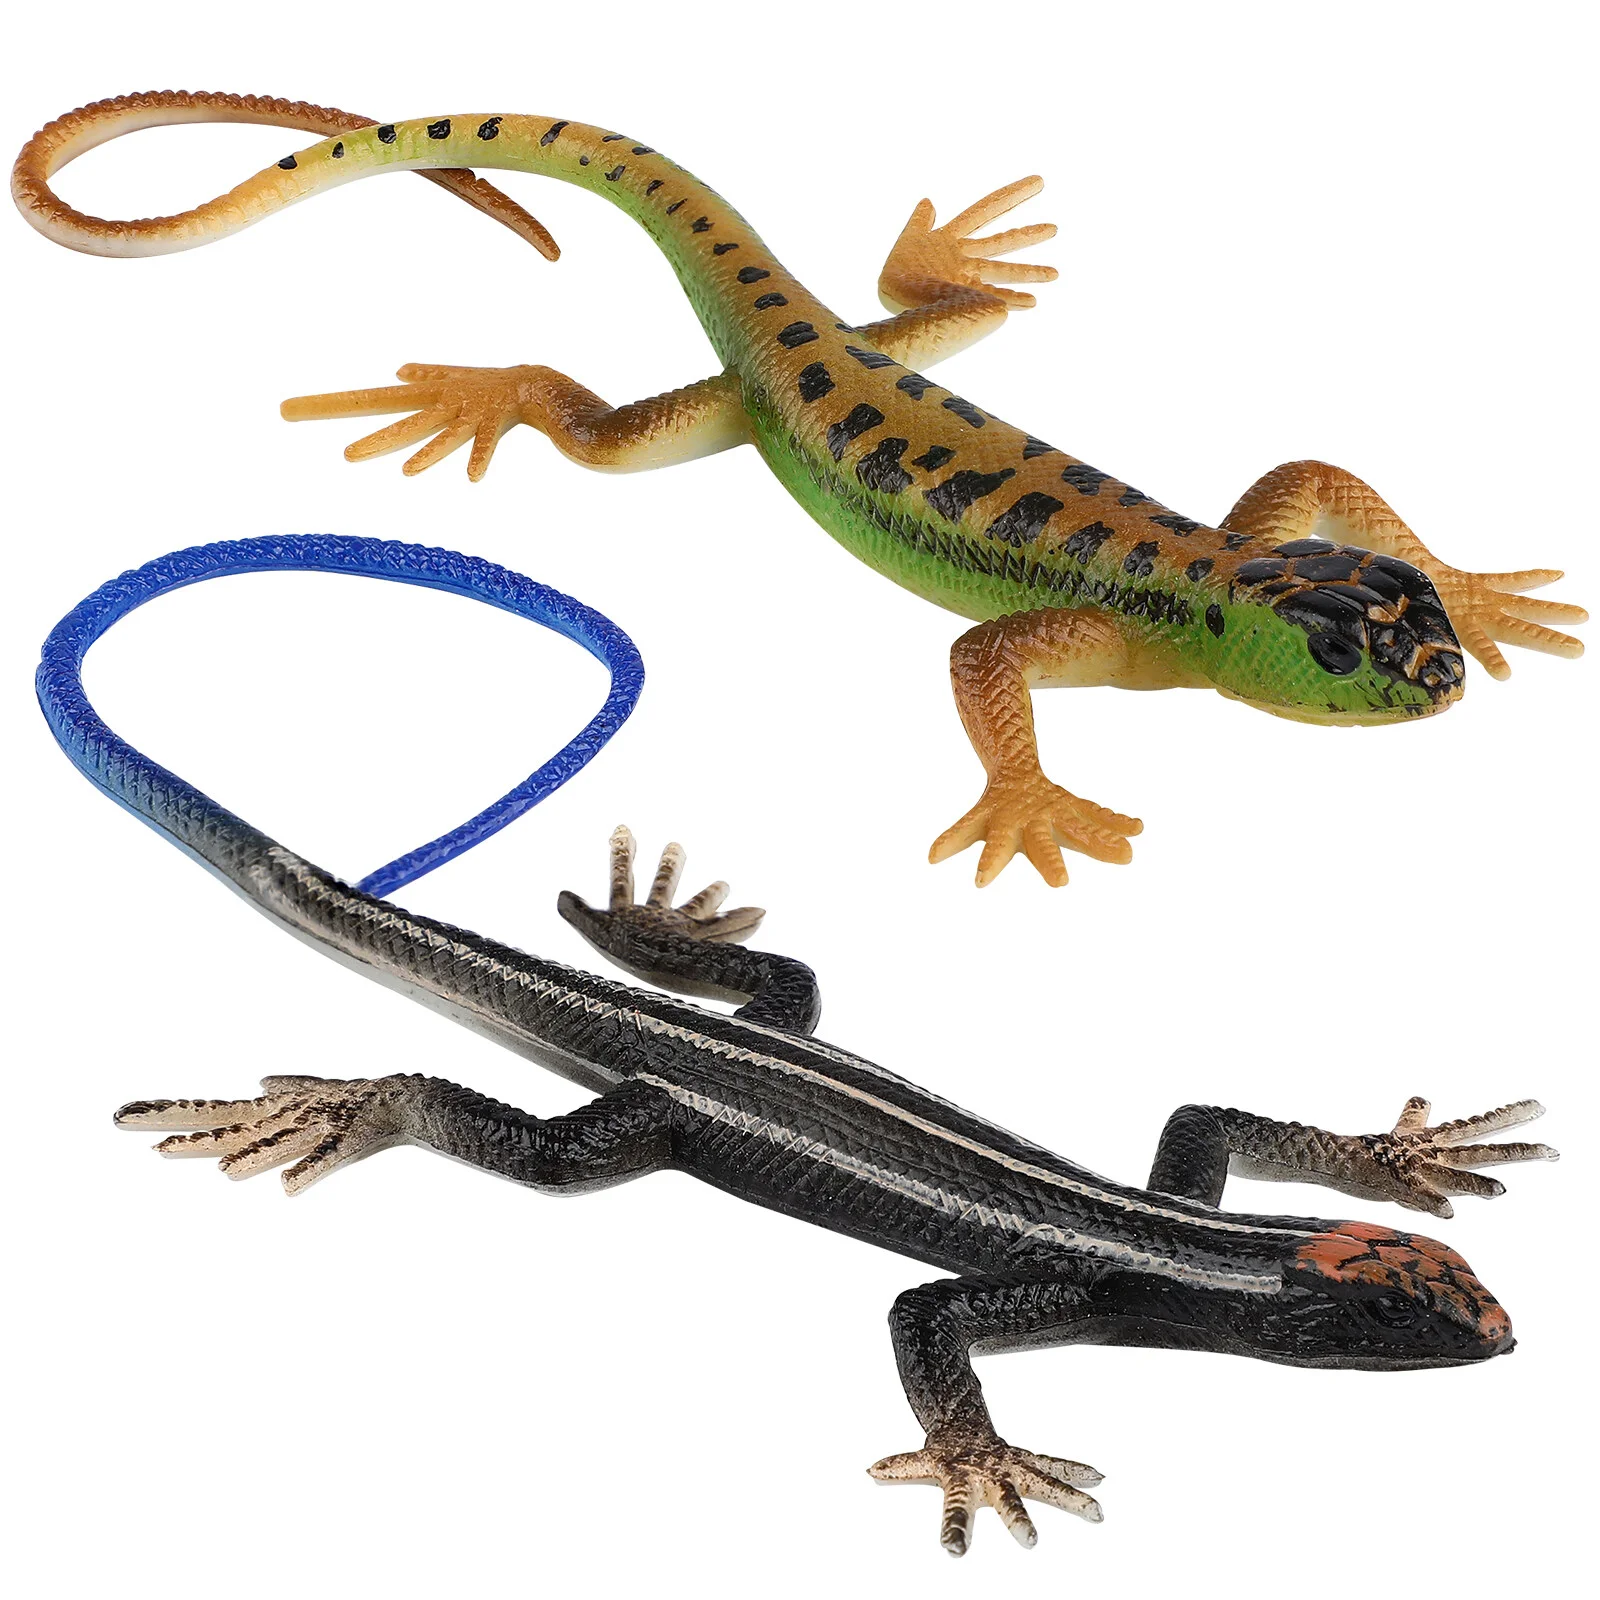 

Пластиковые ящерицы, реалистичные рептилии, искусственные модели рептилий, игрушки для трюков, фигурки ящериц, 2 шт.